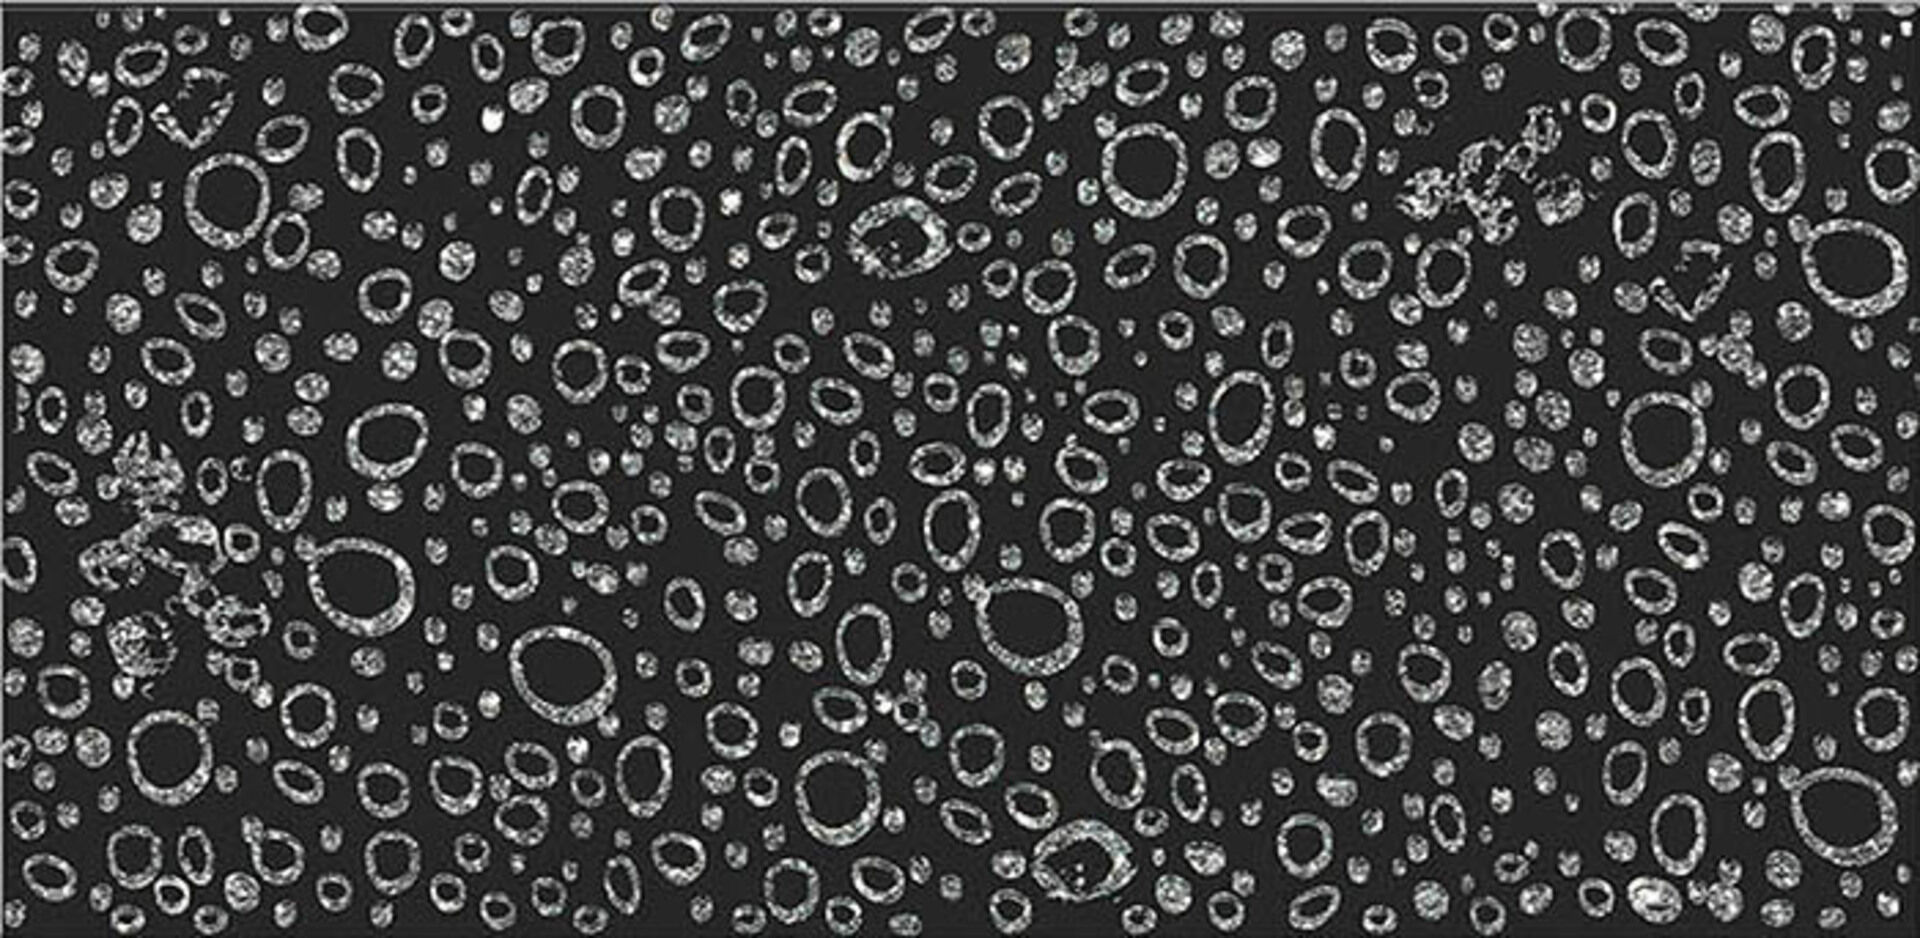 Керамическая плитка DESCANSO FLOW 30*60 / коллекция BUXY-MODUS-LONDON / производитель DUAL GRES / страна Испания